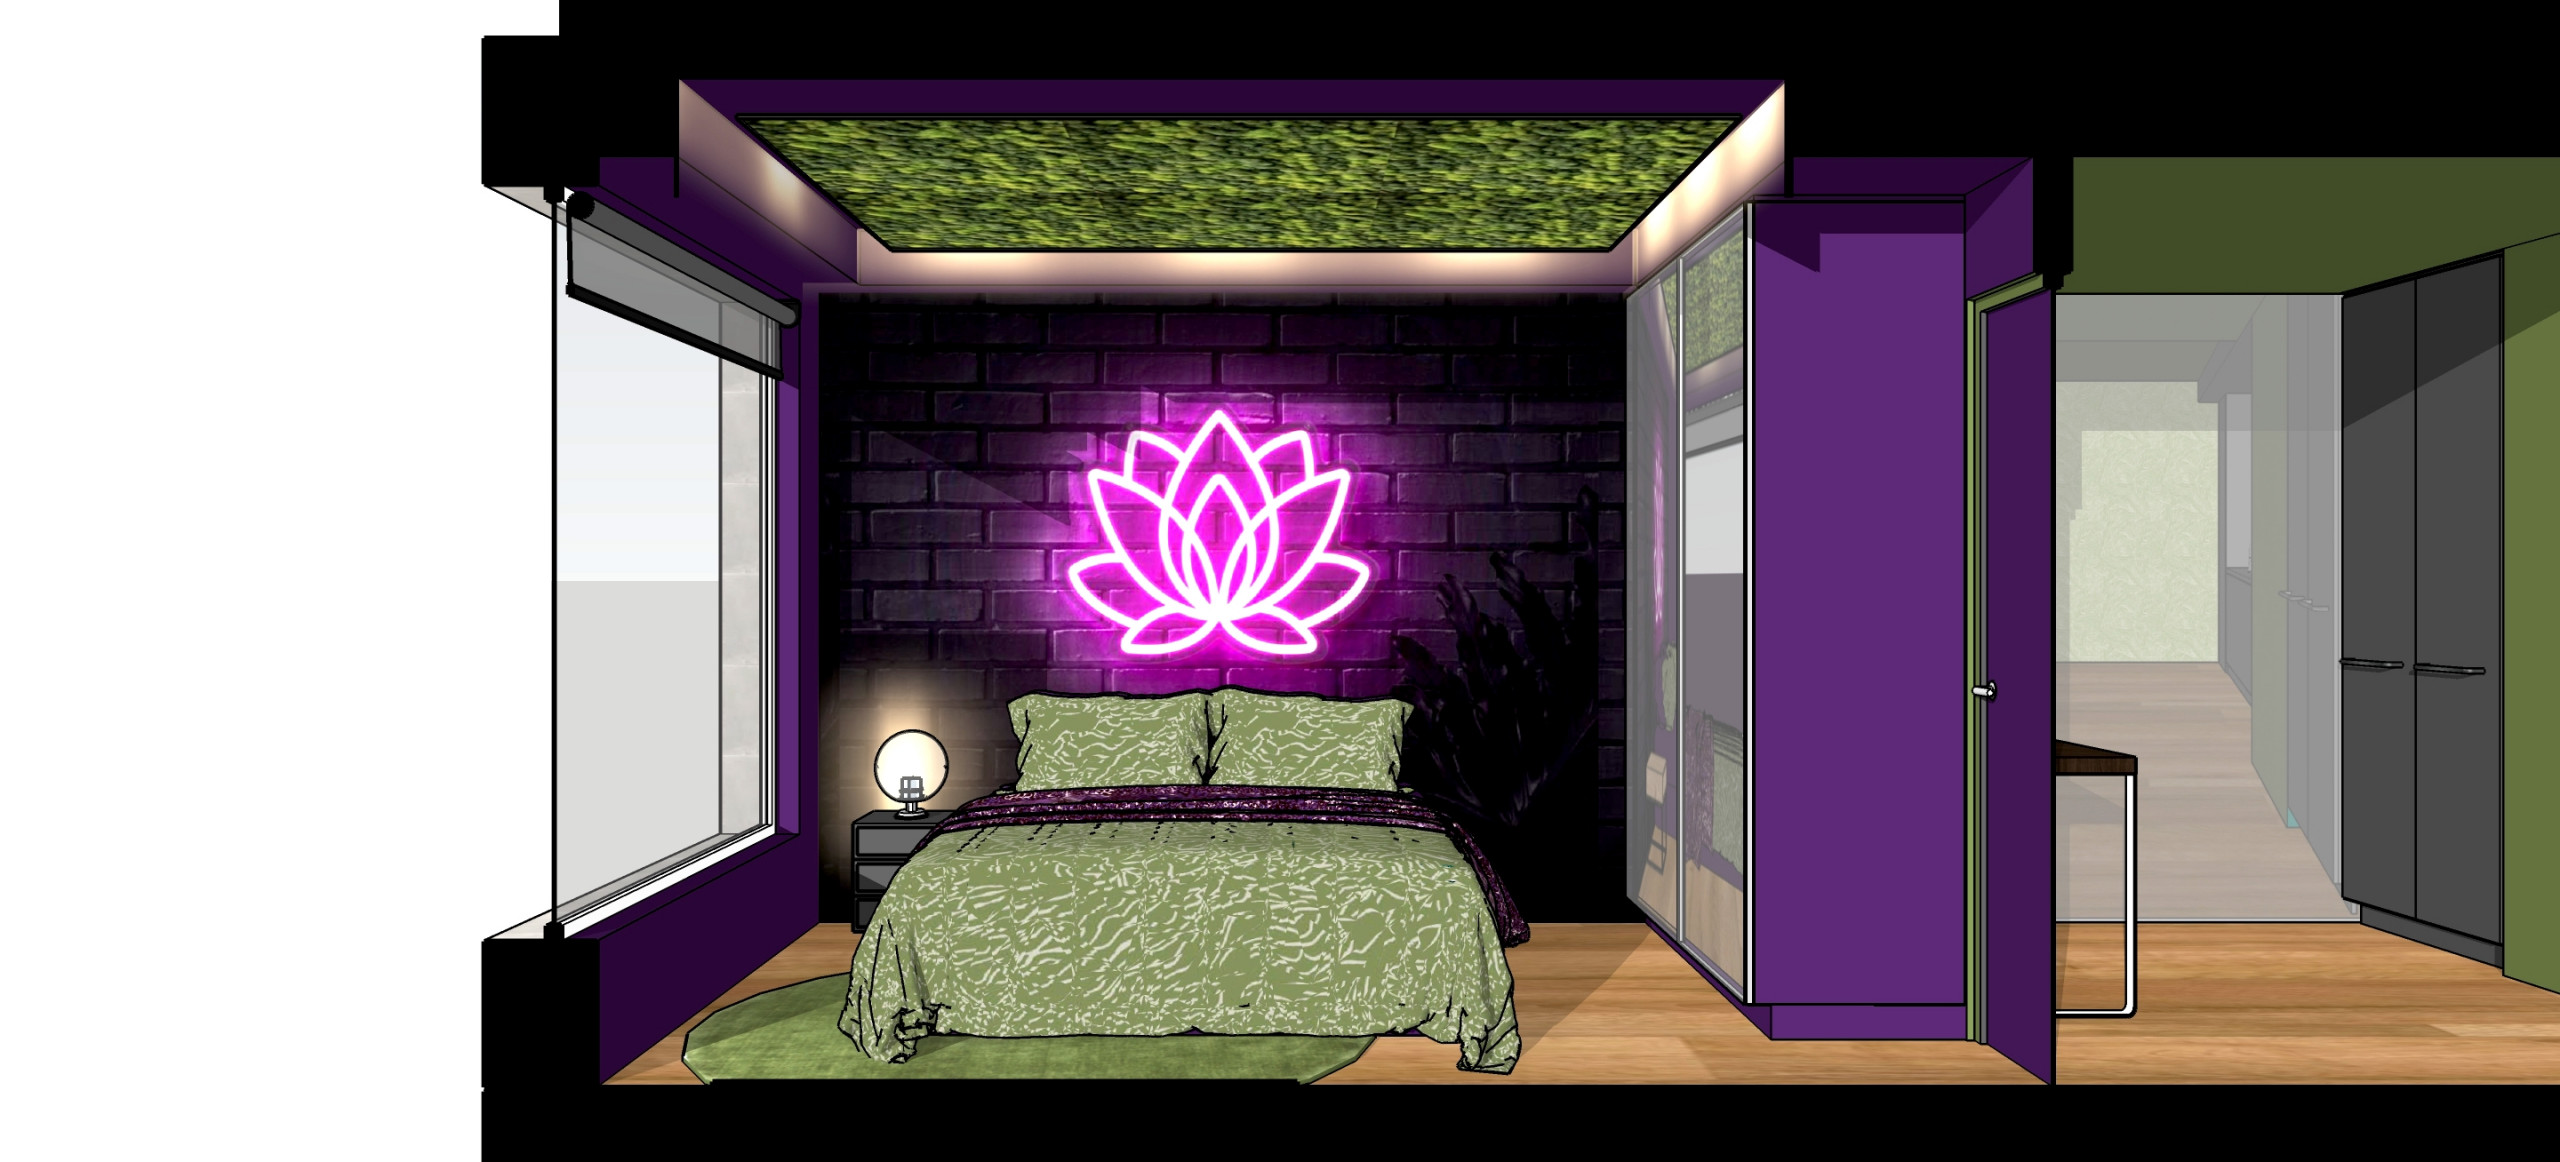 おしゃれな寝室 紫の壁 壁紙 のインテリア画像 75選 22年8月 Houzz ハウズ